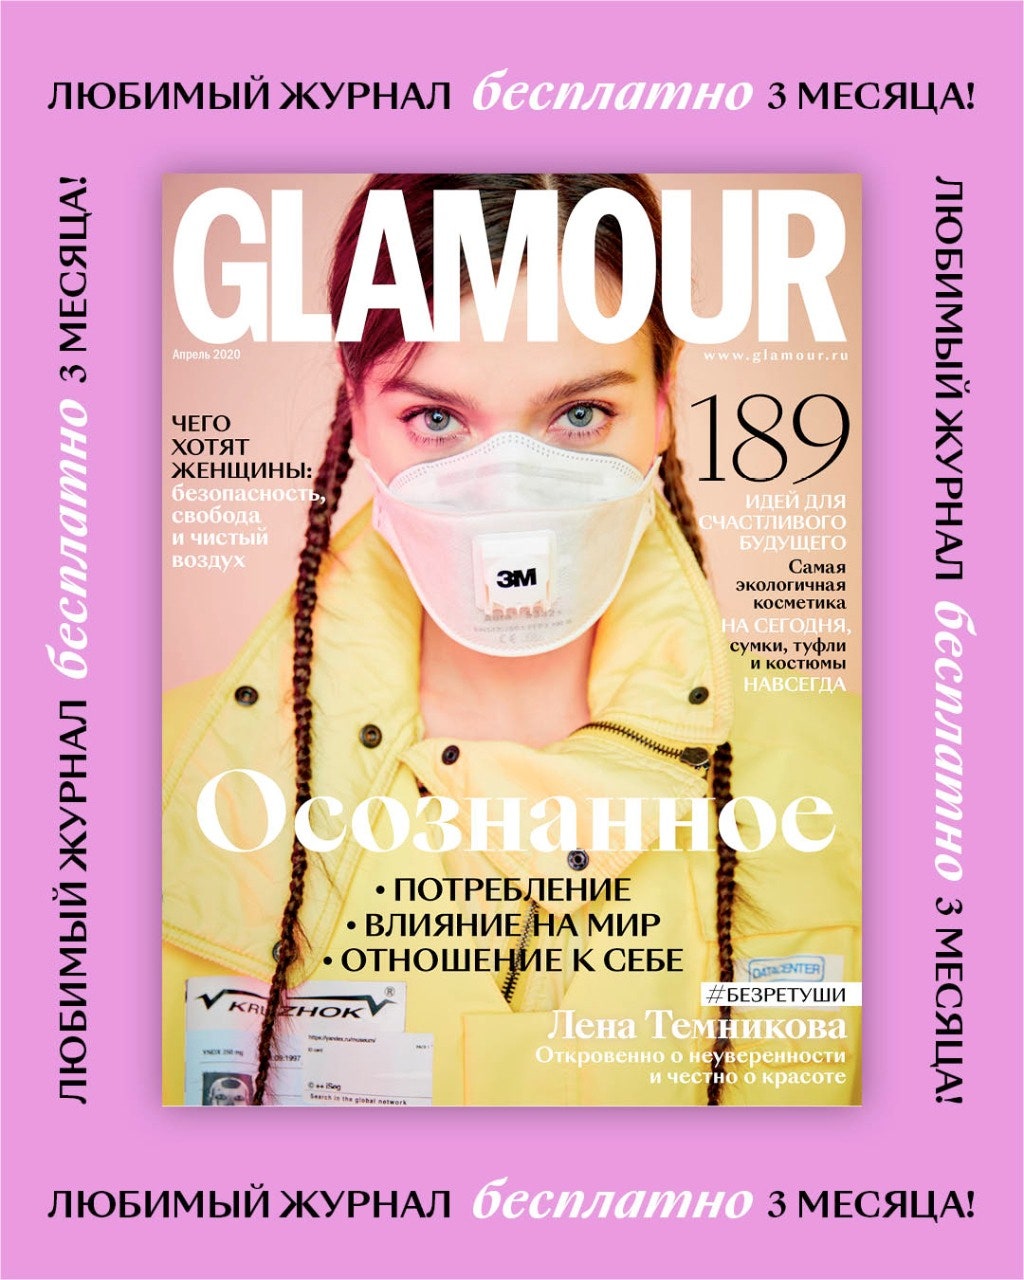 Читайте электронную версию журнала Glamour бесплатно